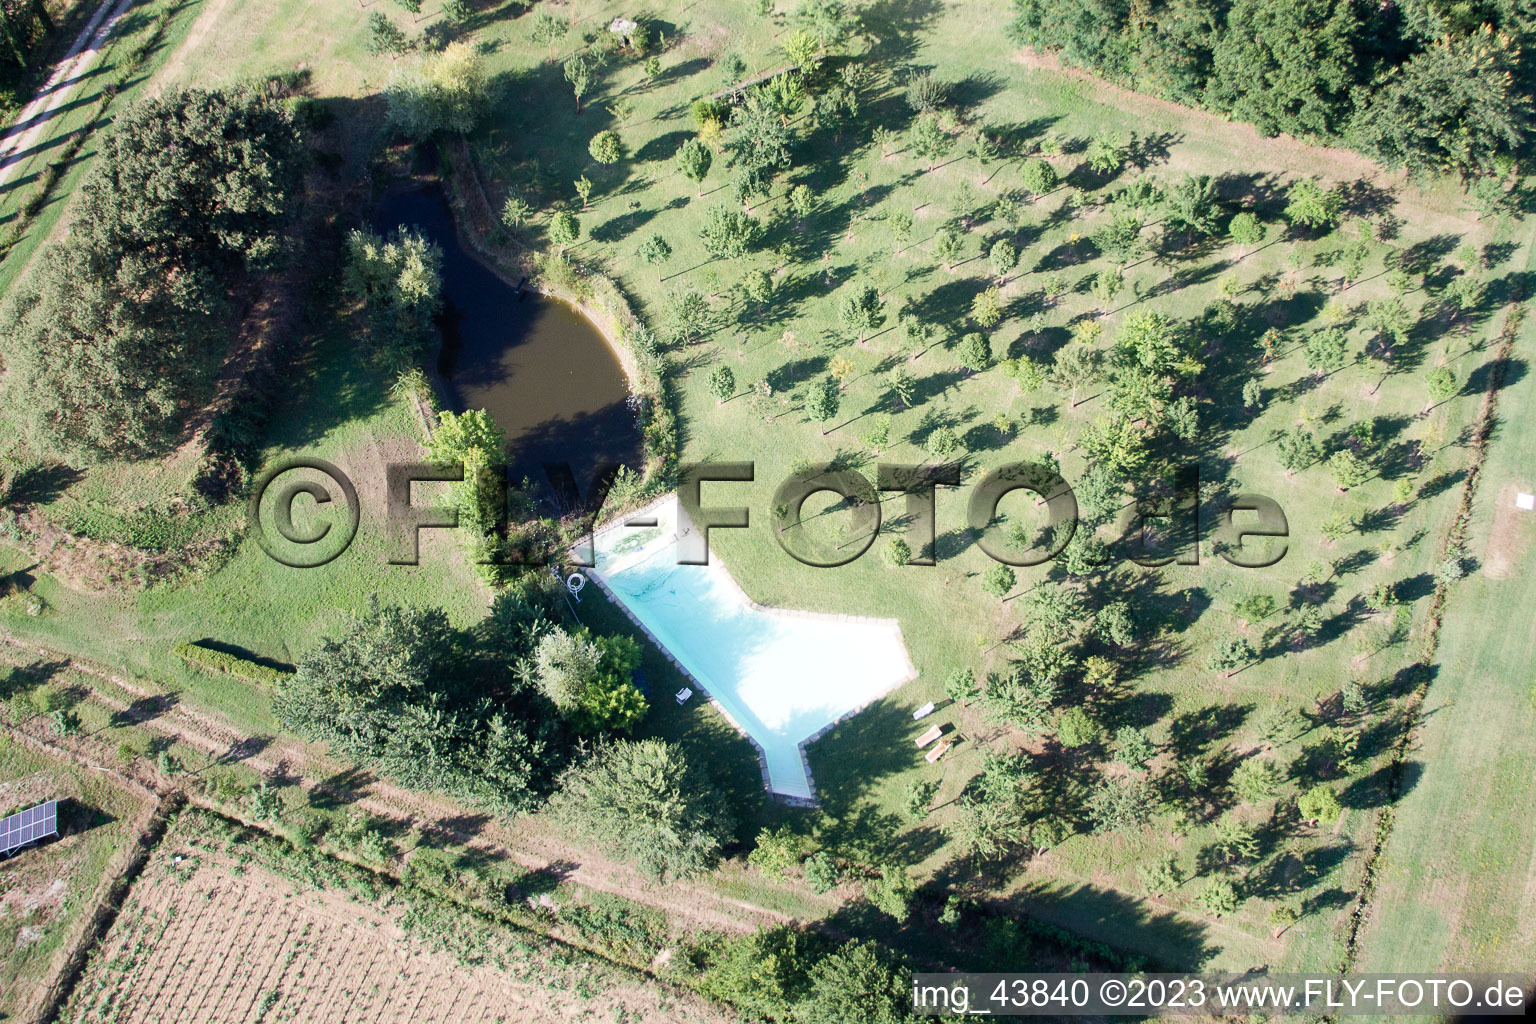 Castroncello im Bundesland Toscana, Italien aus der Luft betrachtet